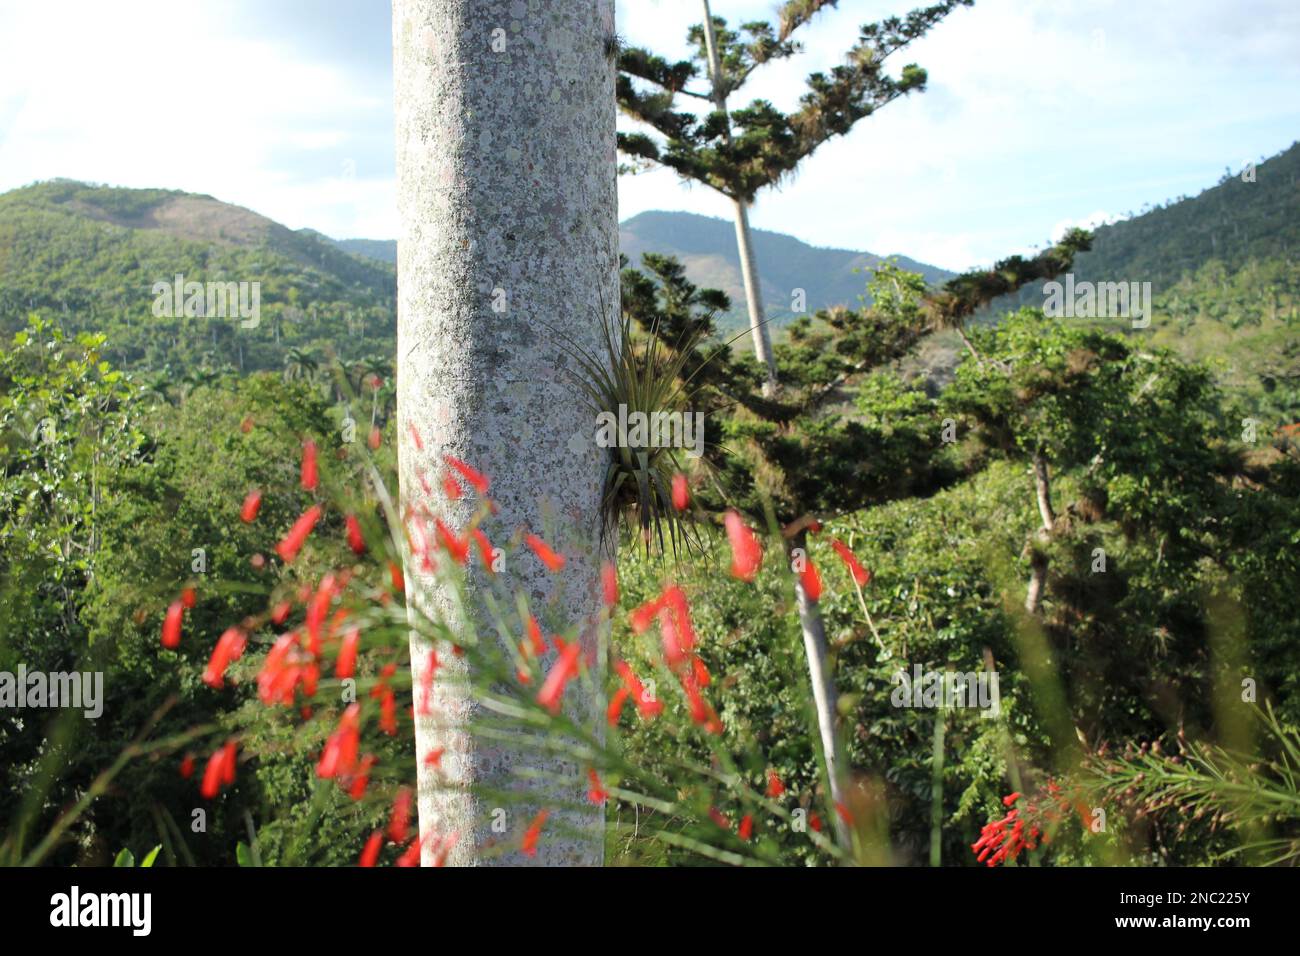 Colorful tropical plants in Soroa Botanical Garden - Orquideario Soroa, Cuba Stock Photo